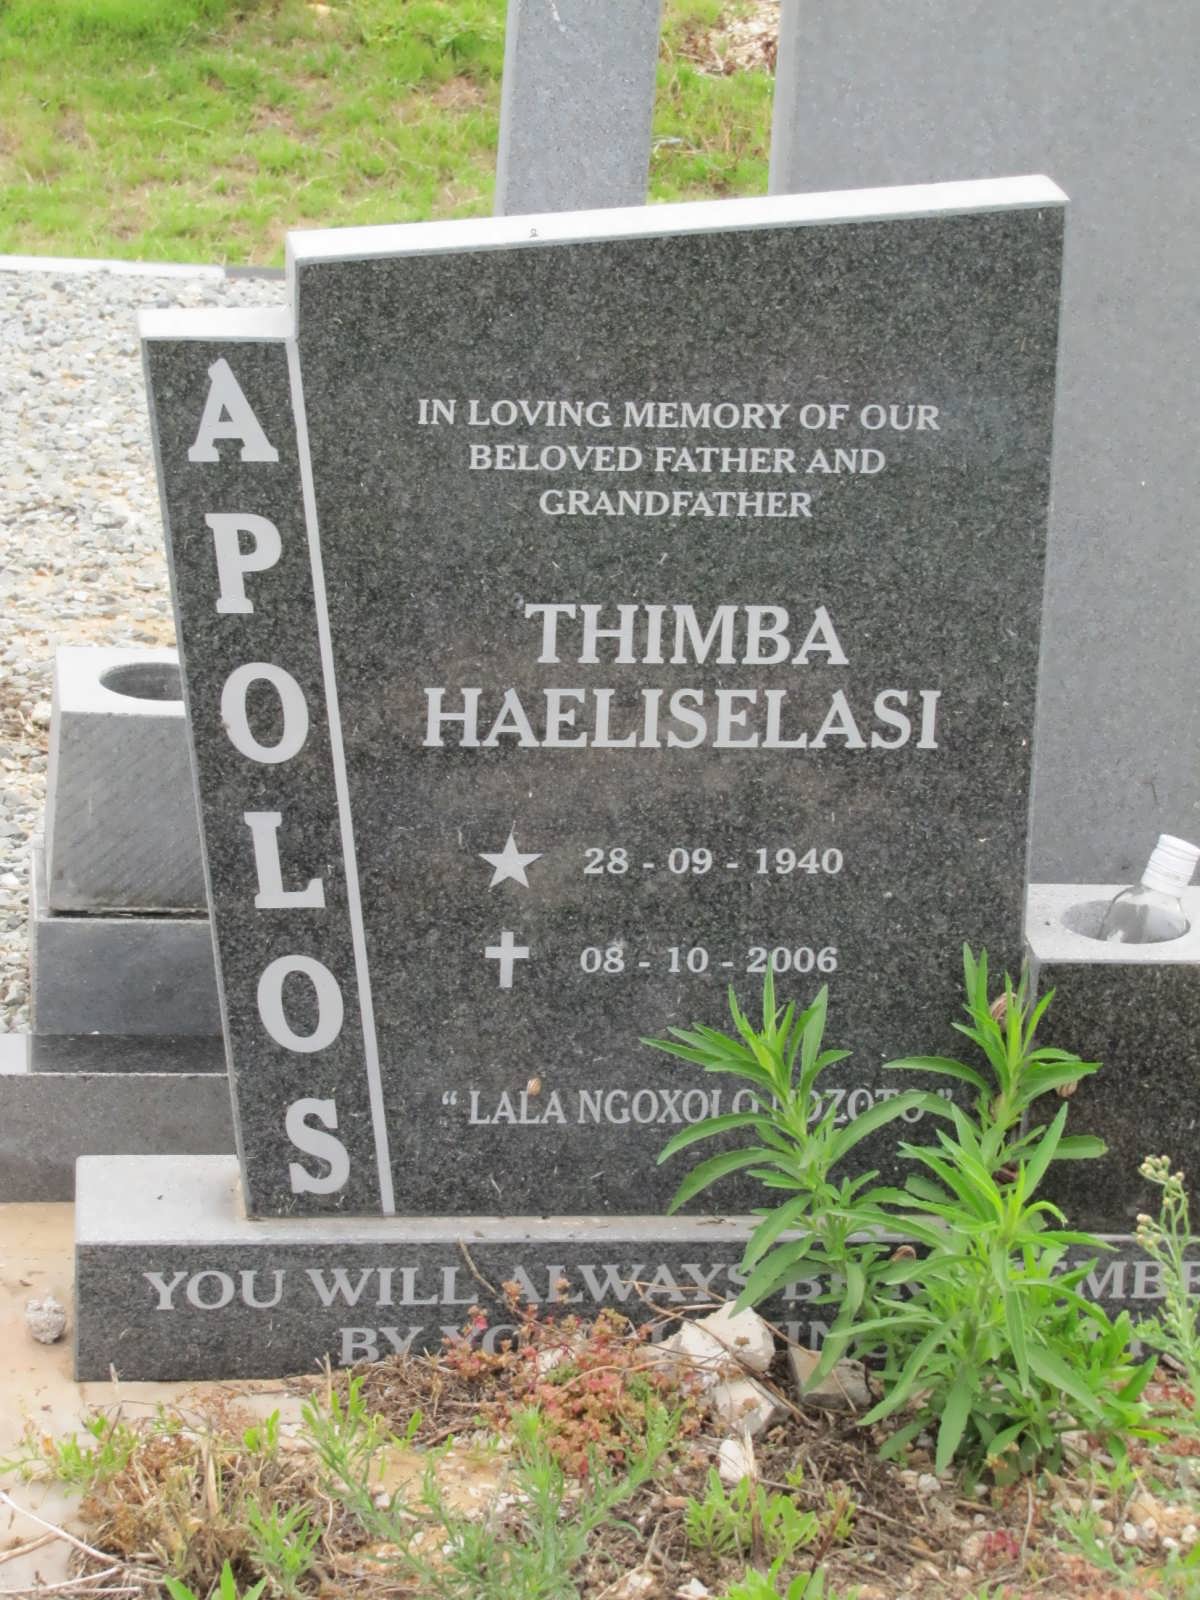 APOLOS Thimba Haeliselasi 1940-2006